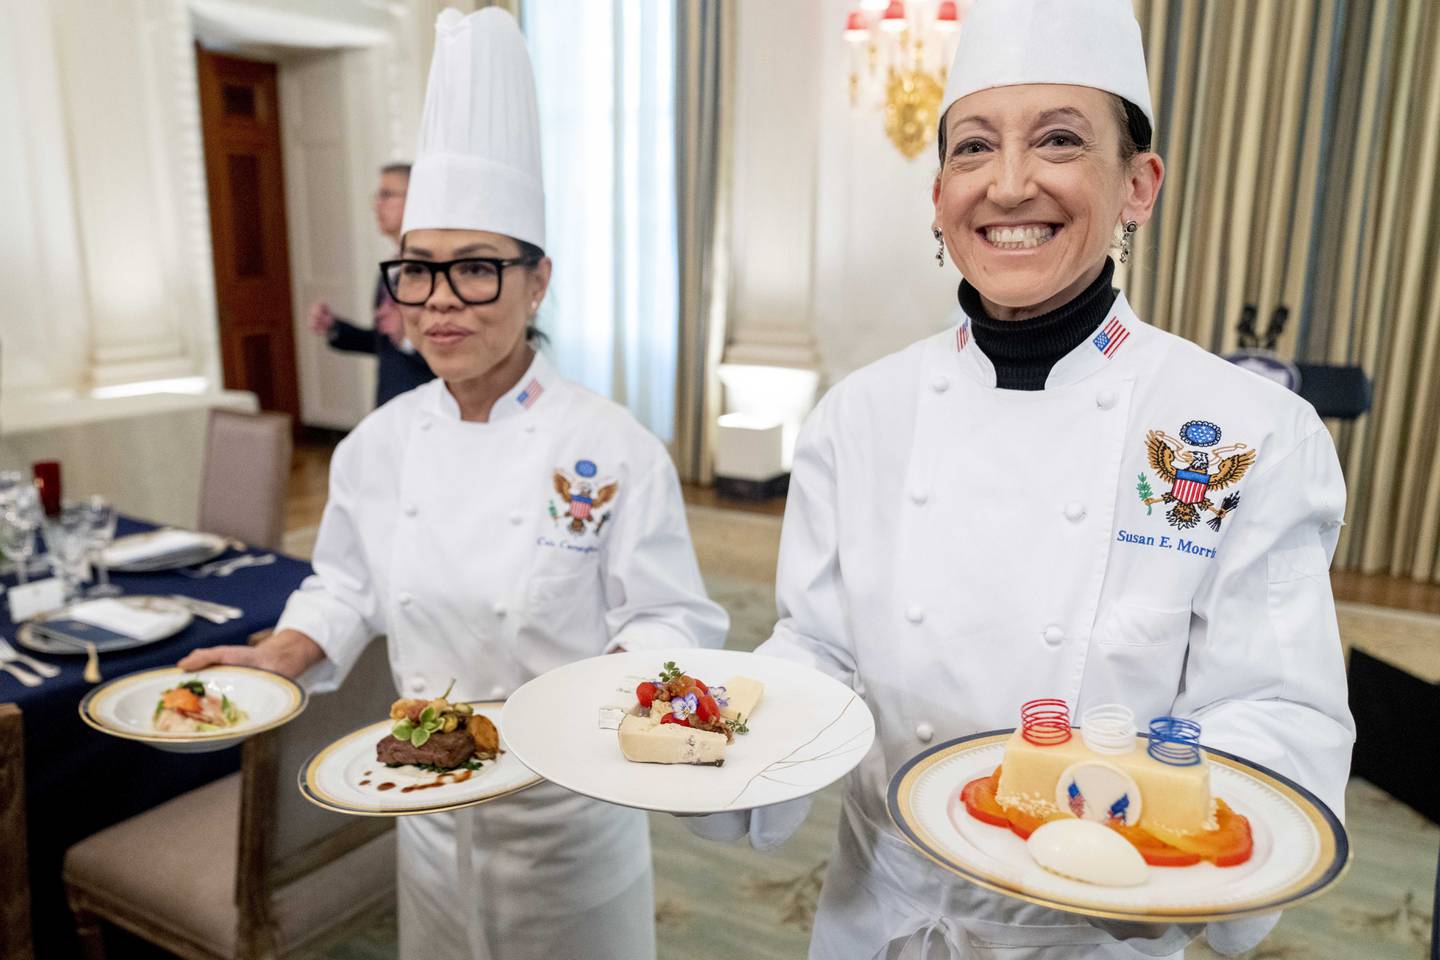 Le chef exécutif Cris Comerford, à gauche, et la chef pâtissière Susie Morrison tiennent des plats lors d'un aperçu médiatique pour le dîner d'État du président français Emmanuel Macron.  PA